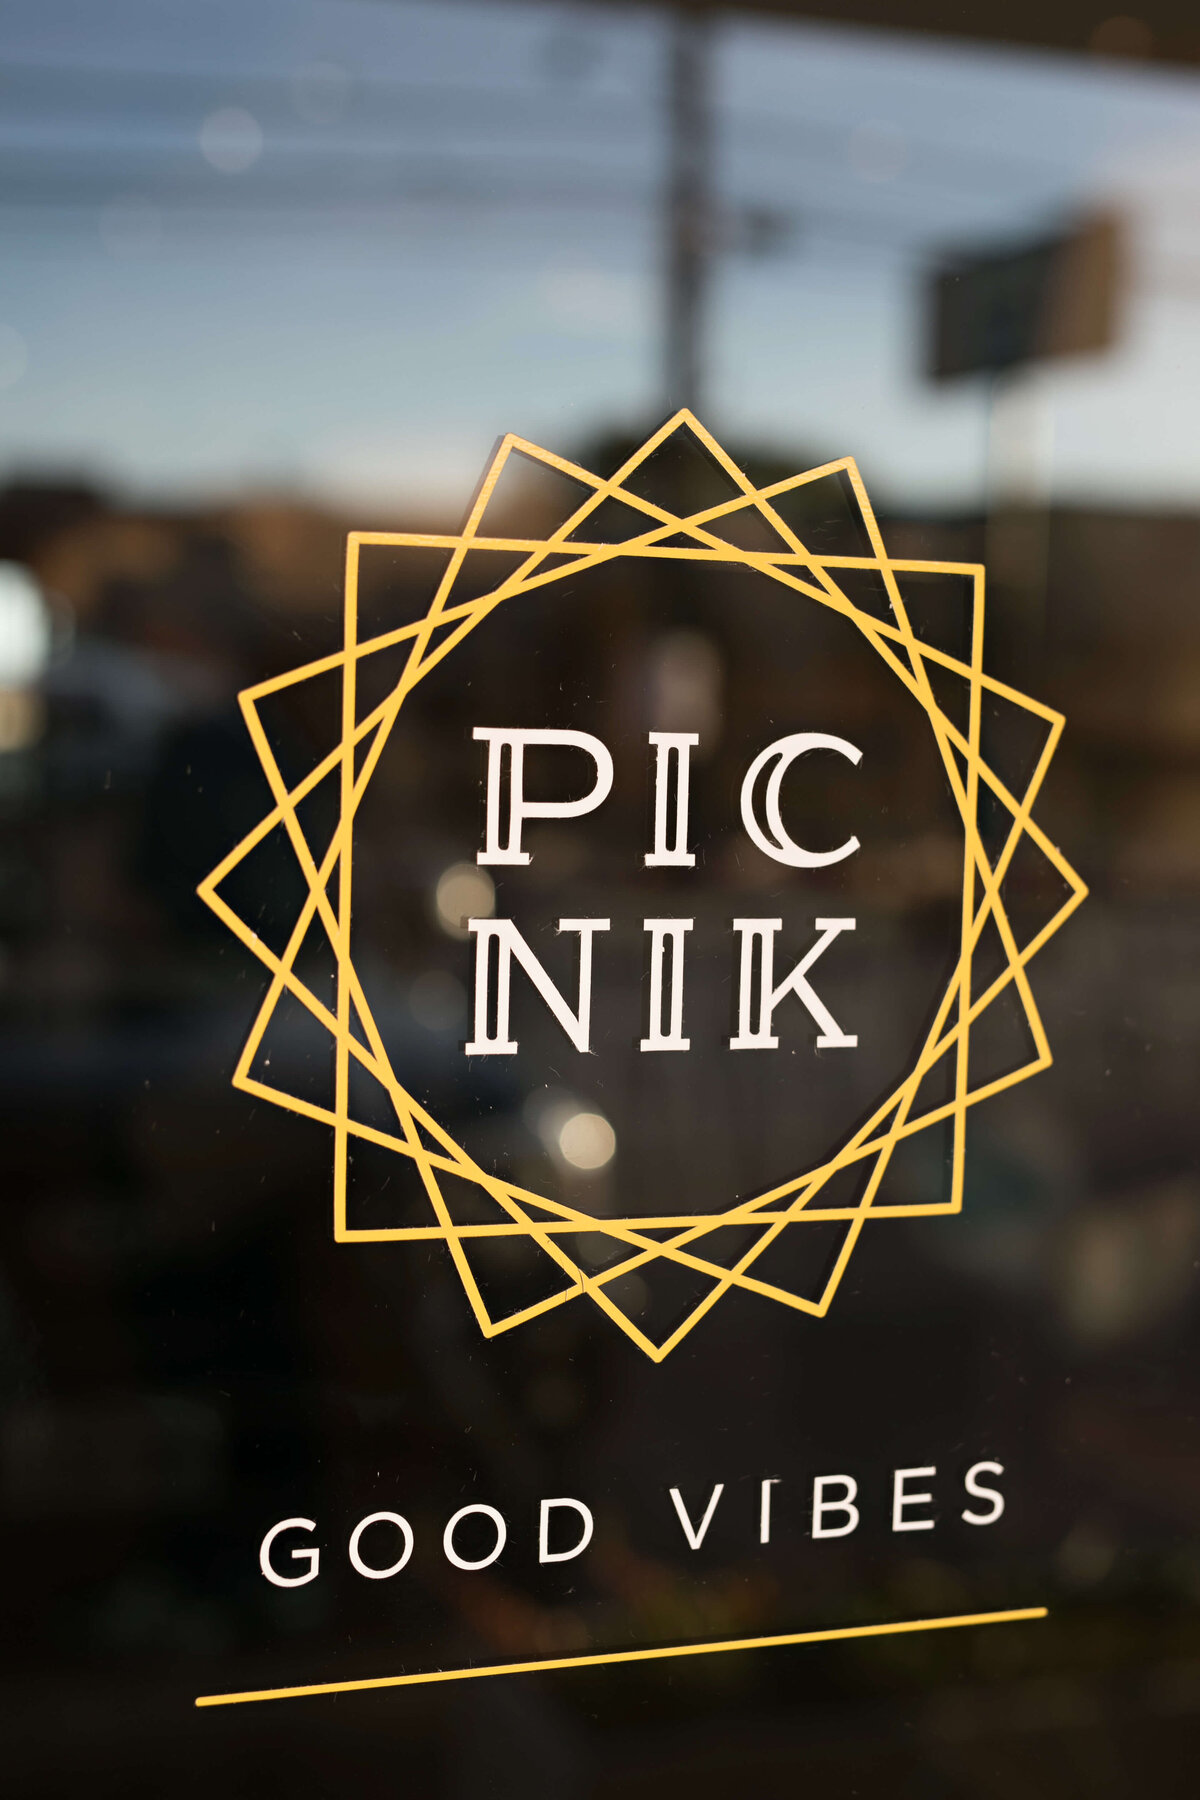 Branding Session for Picnik Restaurant in Austin